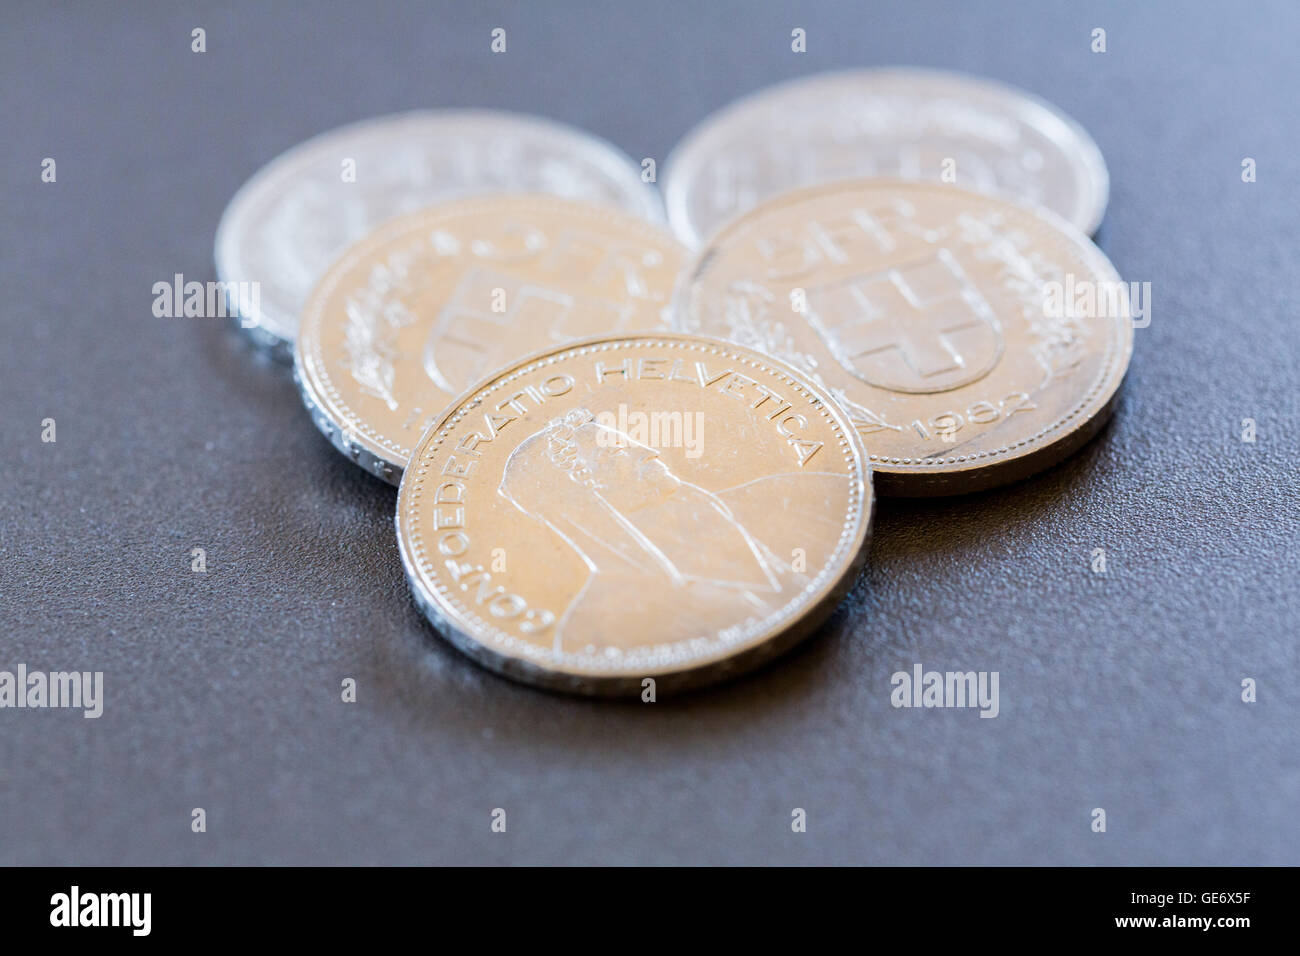 Münzen von 5 Franken. Dieses Geld können Sie verschiedene Produkte in der  Schweiz zu kaufen Stockfotografie - Alamy